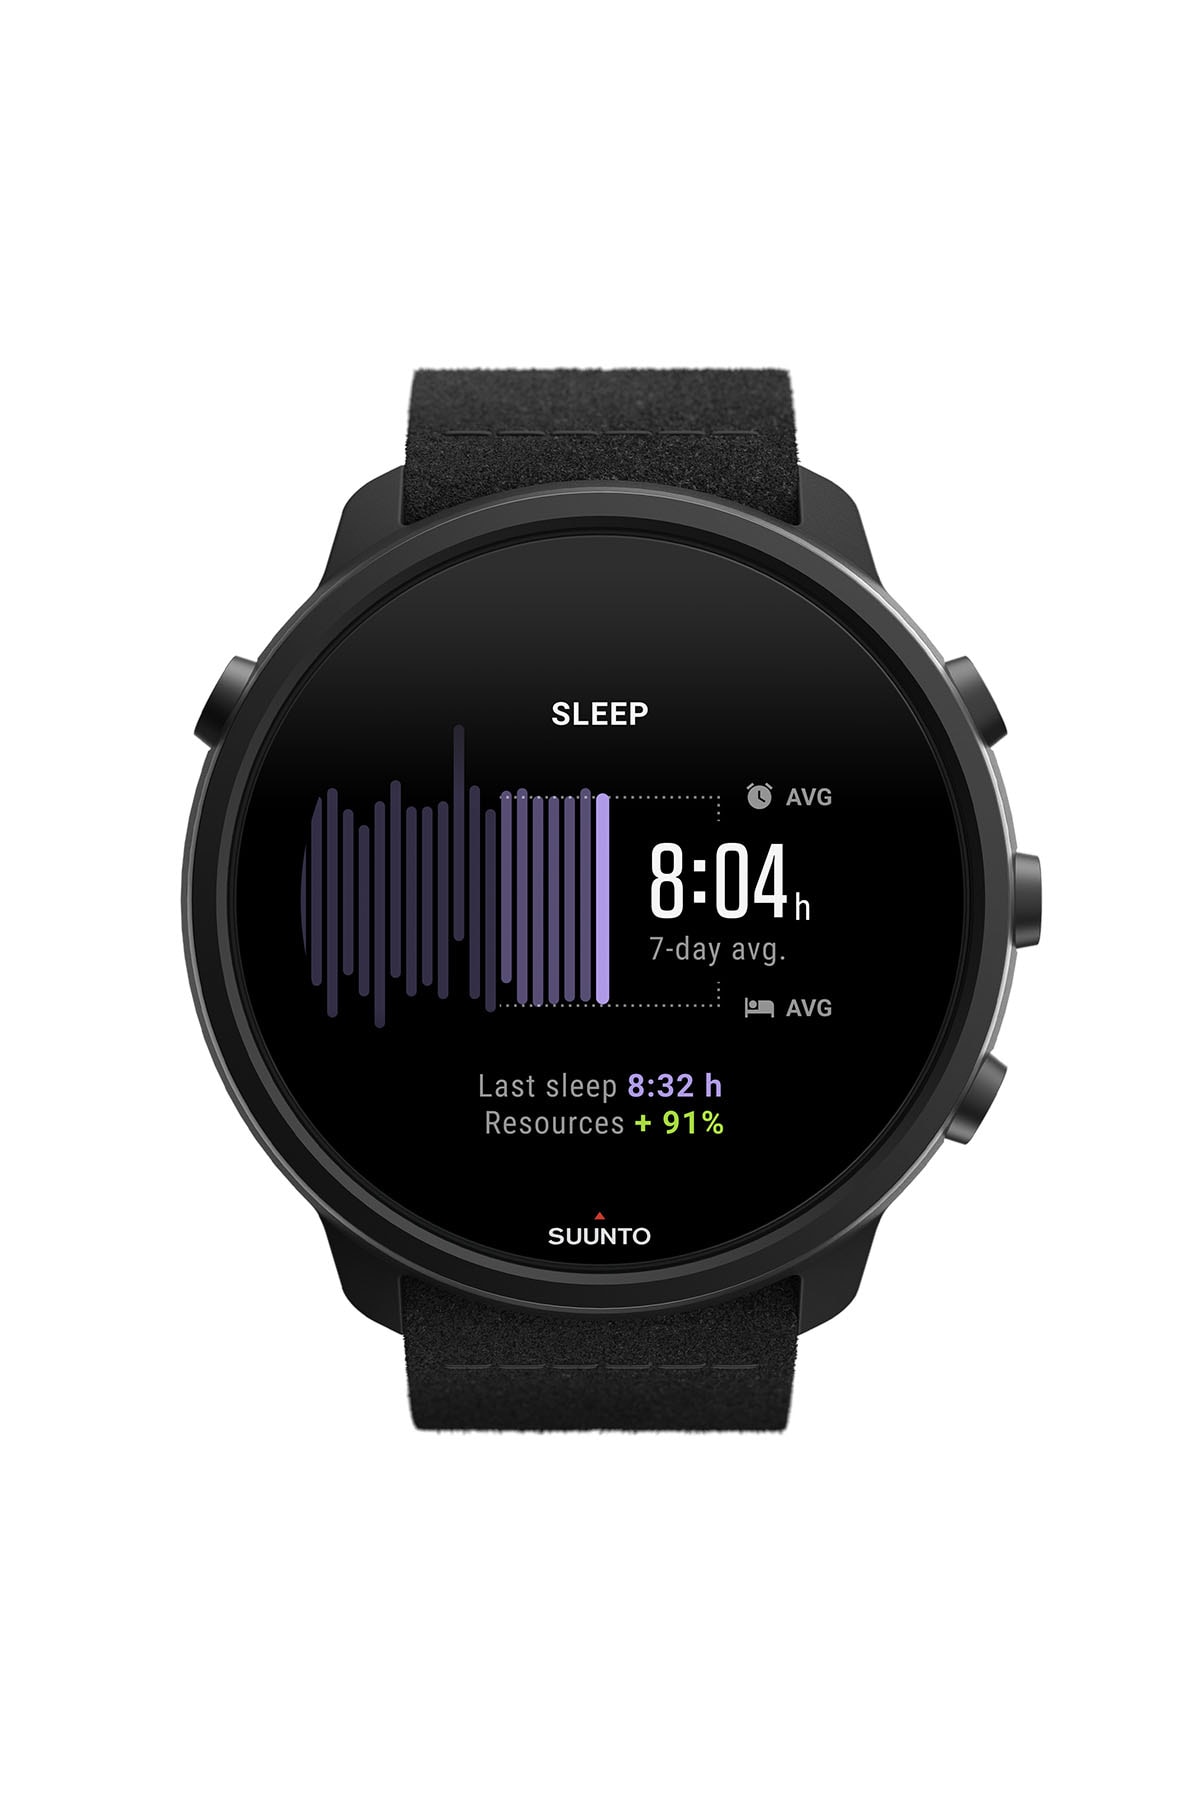 ミニマルなデザインの最新型スマートウォッチ スント 7 チタニウム が登場 SUUNTO 7 TITANIUM smart watch release info